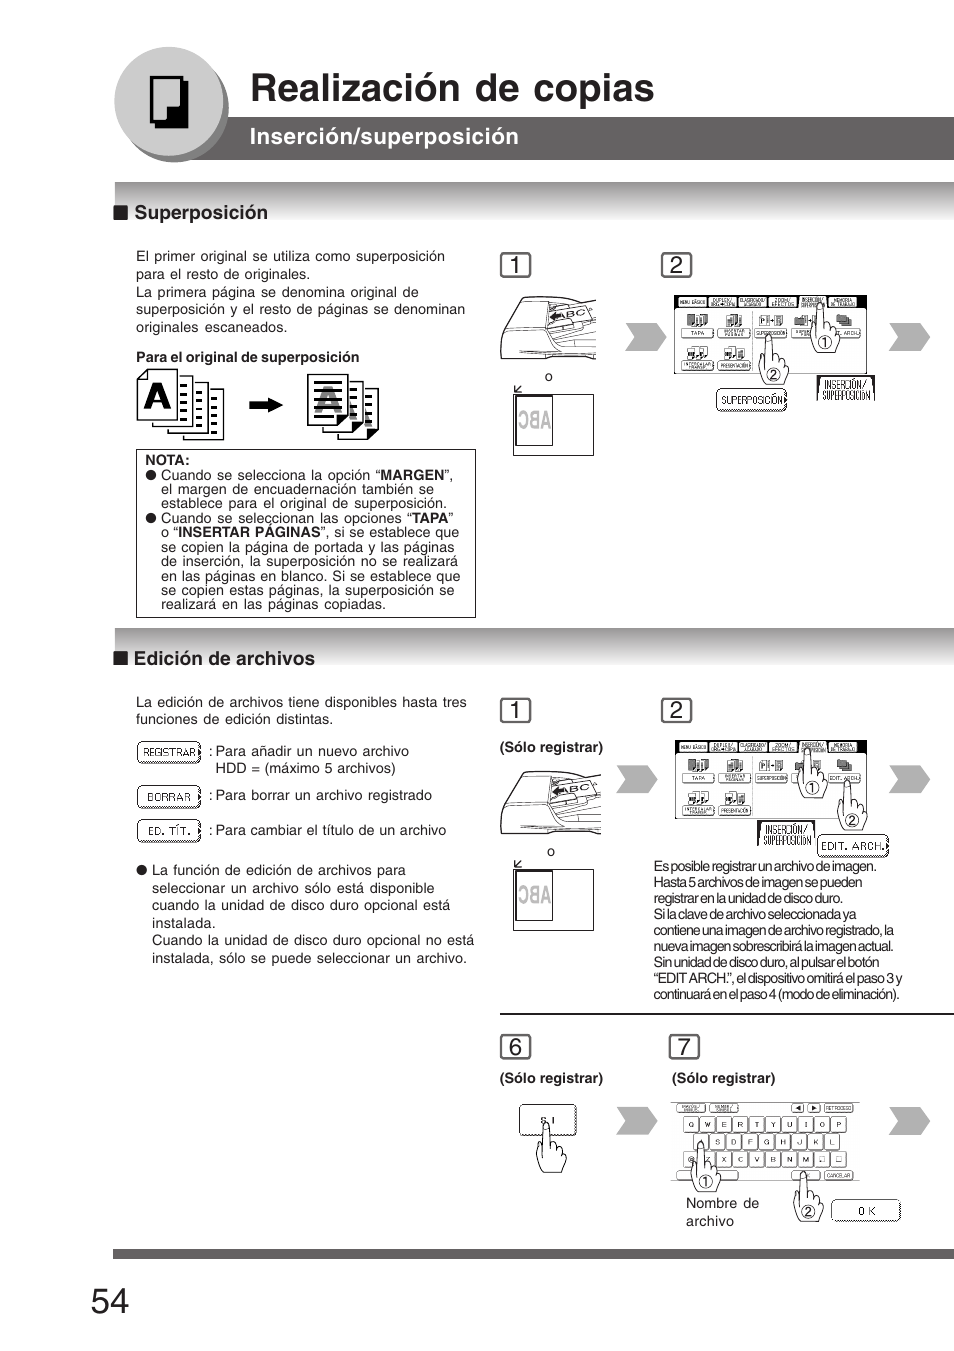 Superposición, Edición de archivos, Superposición ■ edición de archivos | Realización de copias, Inserción/superposición | Panasonic DP8035 Manual del usuario | Página 54 / 92